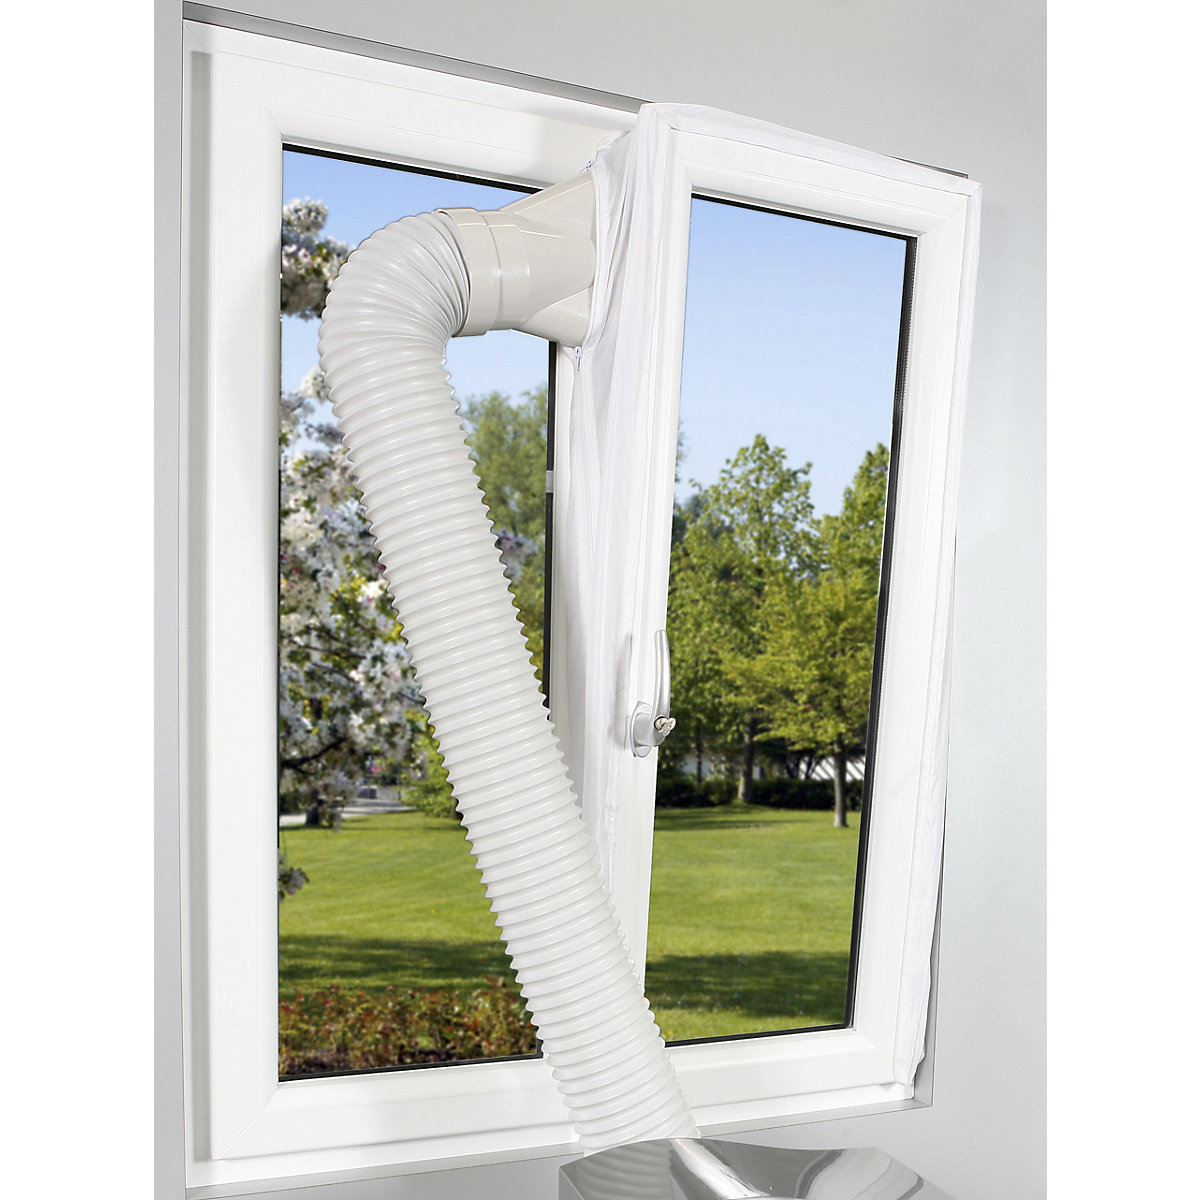 Guarnizione per finestra per climatizzatori: per climatizzatori portatili